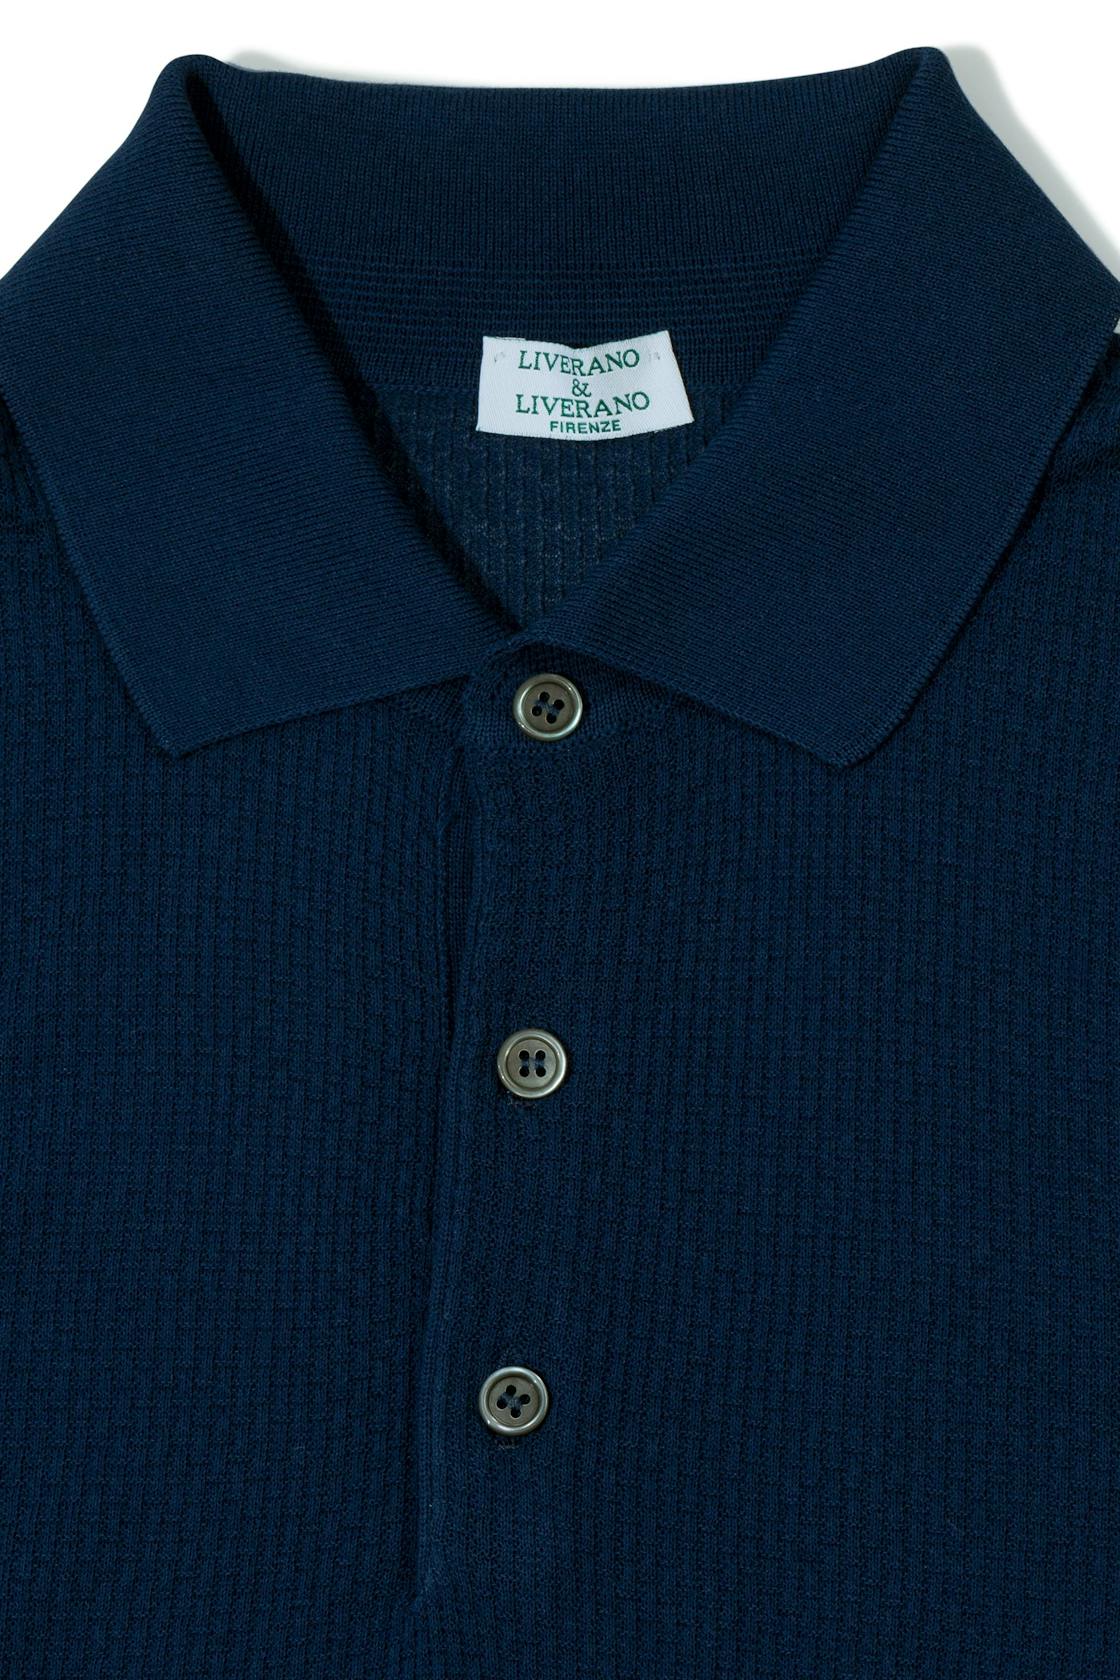 Liverano Blue Cotton Short Sleeve Spread Collar Polo